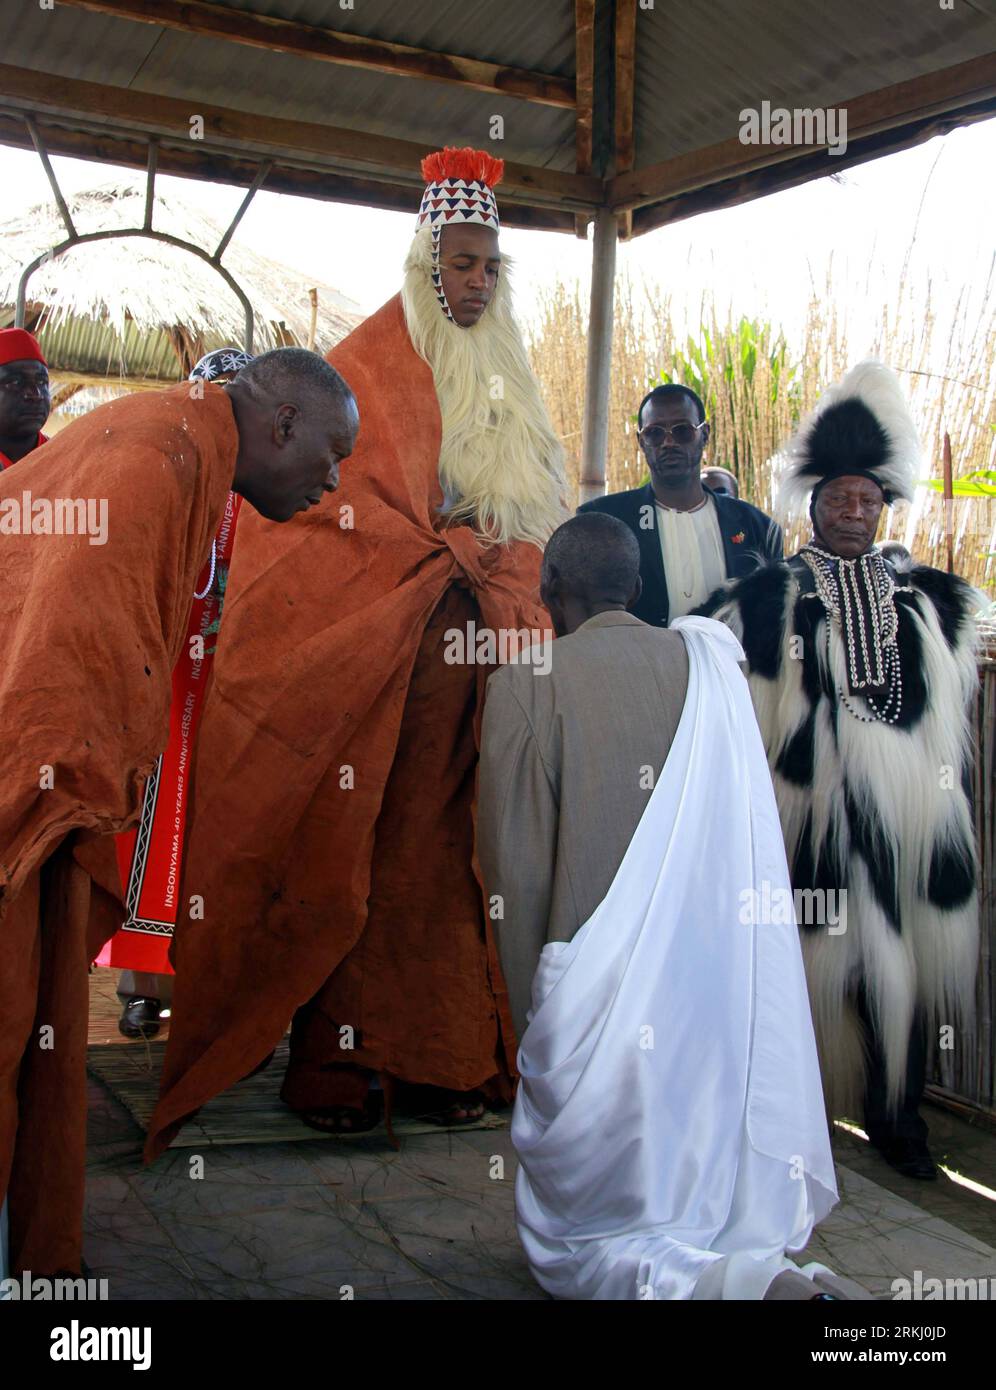 Bildnummer : 55935641 Datum : 10.09.2011 Copyright : imago/Xinhua OUGANDA, 11 septembre 2011 (Xinhua) -- Oyo Nyimba (C), le roi de Tooro, assiste à une cérémonie annuelle dans le Royaume de Tooro dans l'ouest de l'Ouganda, le 10 septembre 2011. Le Royaume de Tooro, l'un des sept royaumes de l'Ouganda, est situé dans la partie occidentale du pays avec une population de 2 millions d'habitants. . (Xinhua/Yuan Qing) (cl) UGANDA-TOORO-KING-CEREMONY PUBLICATIONxNOTxINxCHN People Politik xjh x0x premiumd 2011 hoch 55935641 Date 10 09 2011 Copyright Imago XINHUA Ouganda sept 11 2011 XINHUA Oyo C le Roi de assiste à la cérémonie annuelle au Royaume de Banque D'Images